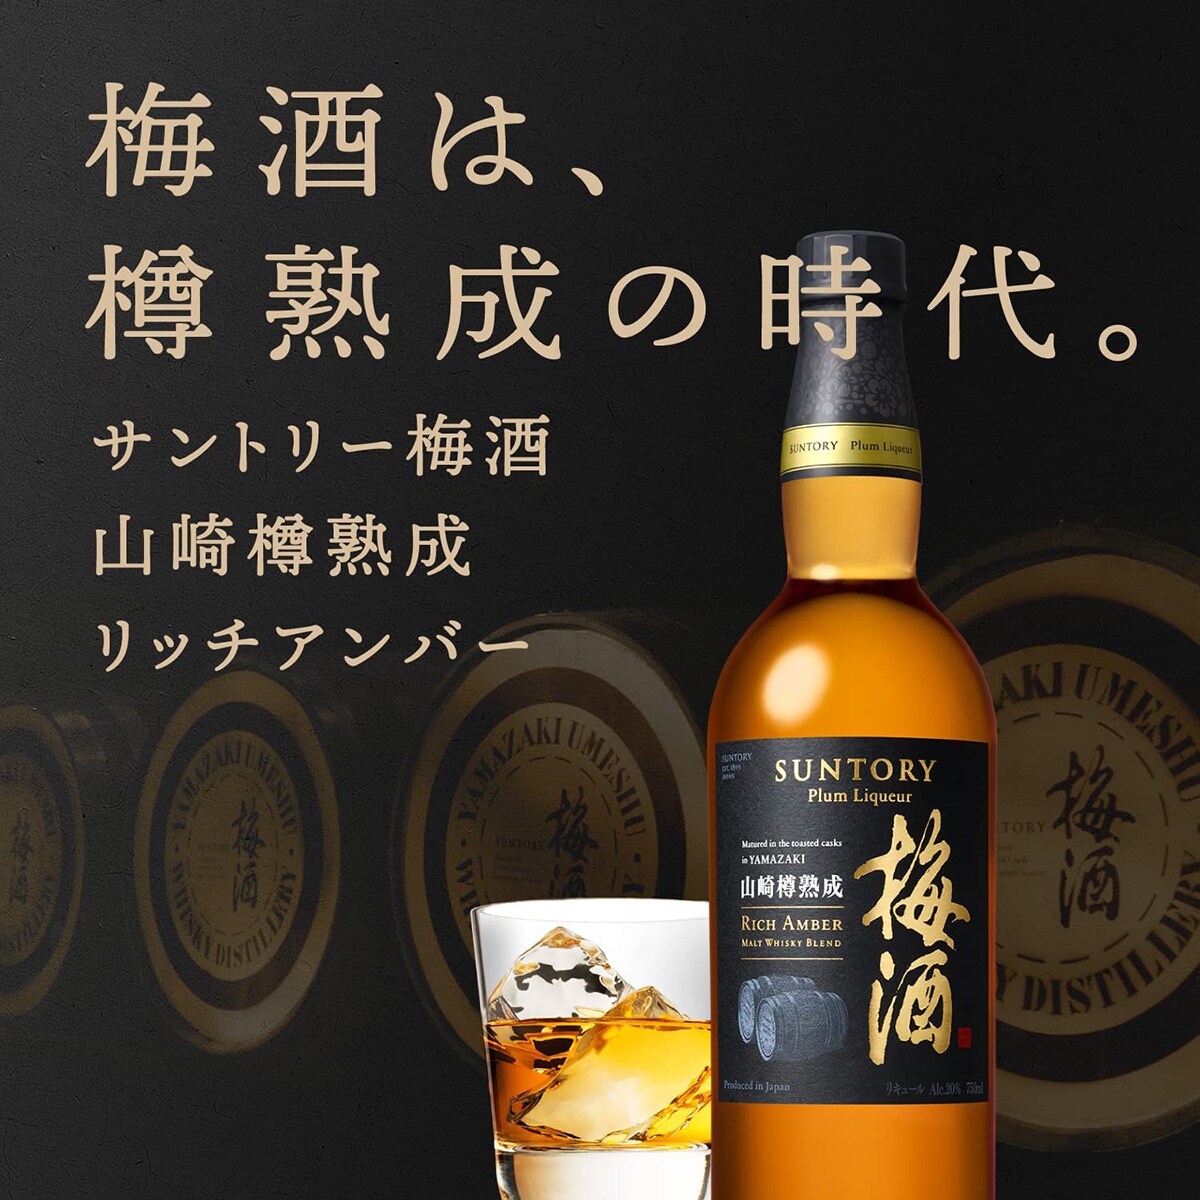 日版Suntory 三得利山崎蒸溜所華麗琥珀焙煎樽熟成威士忌梅酒(禮盒裝